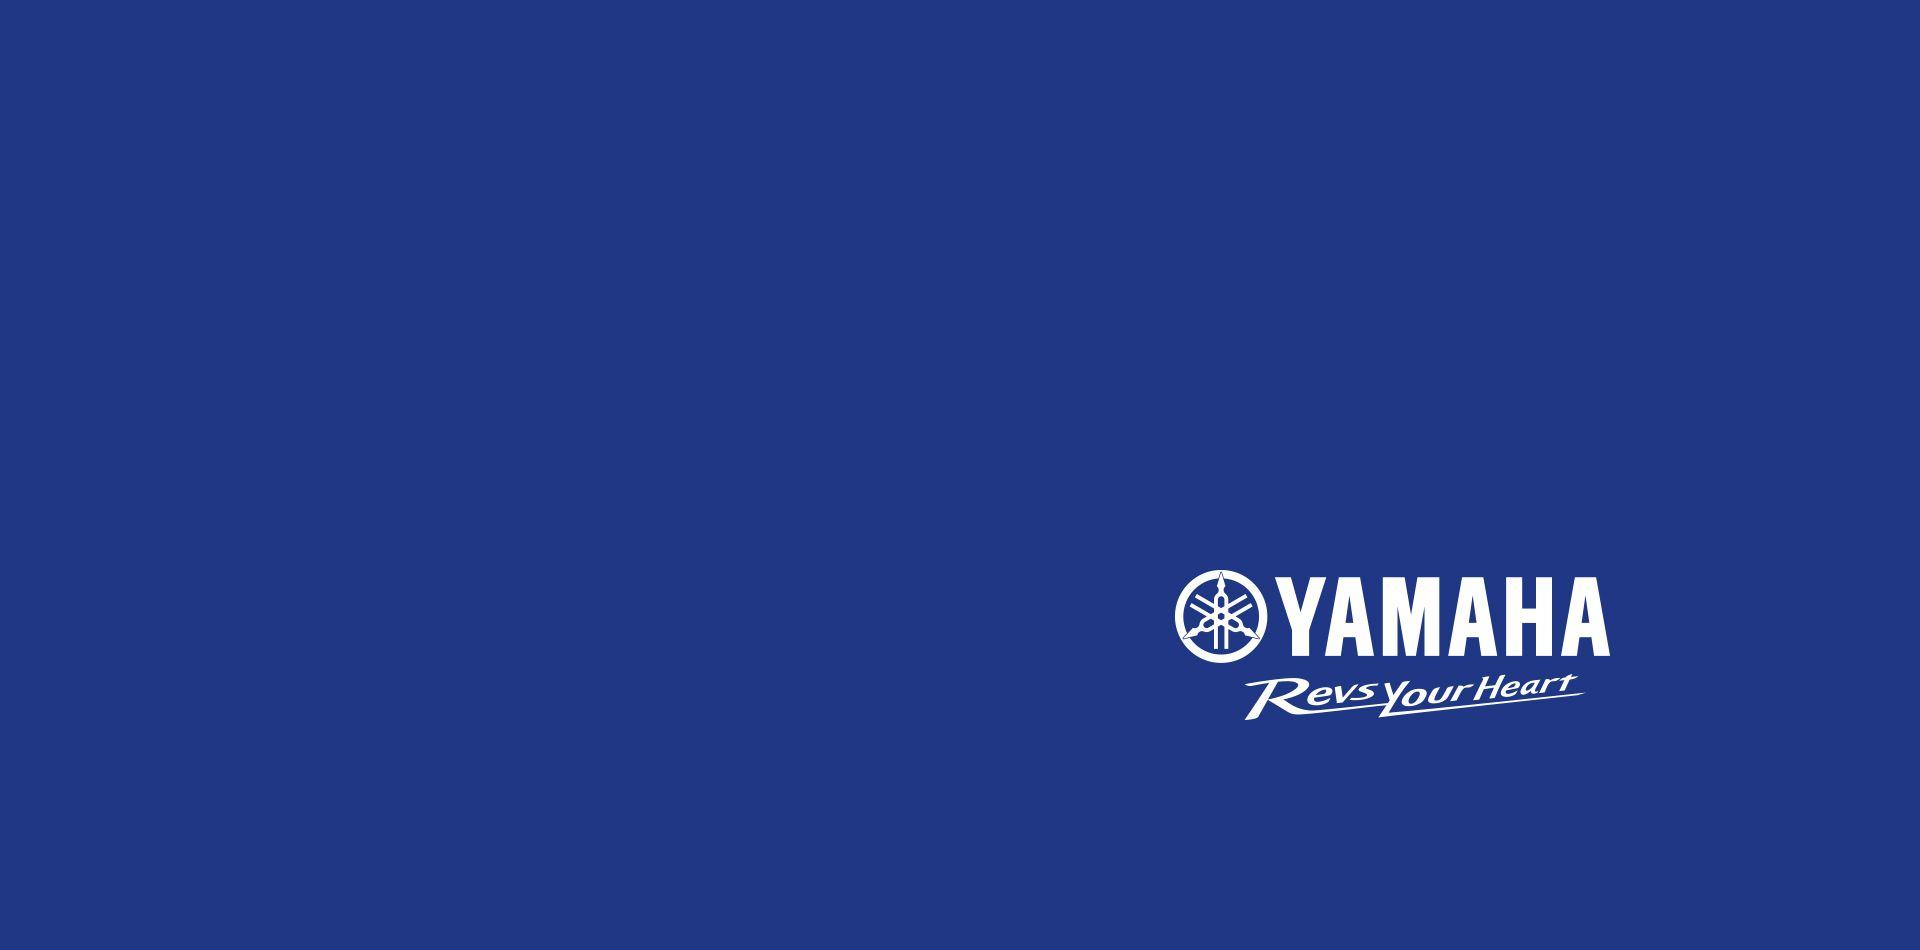 Yamaha Racing Logo - Yamaha Motor Co., Ltd. Announces YAMAHA FACTORY RACING TEAM Rider ...